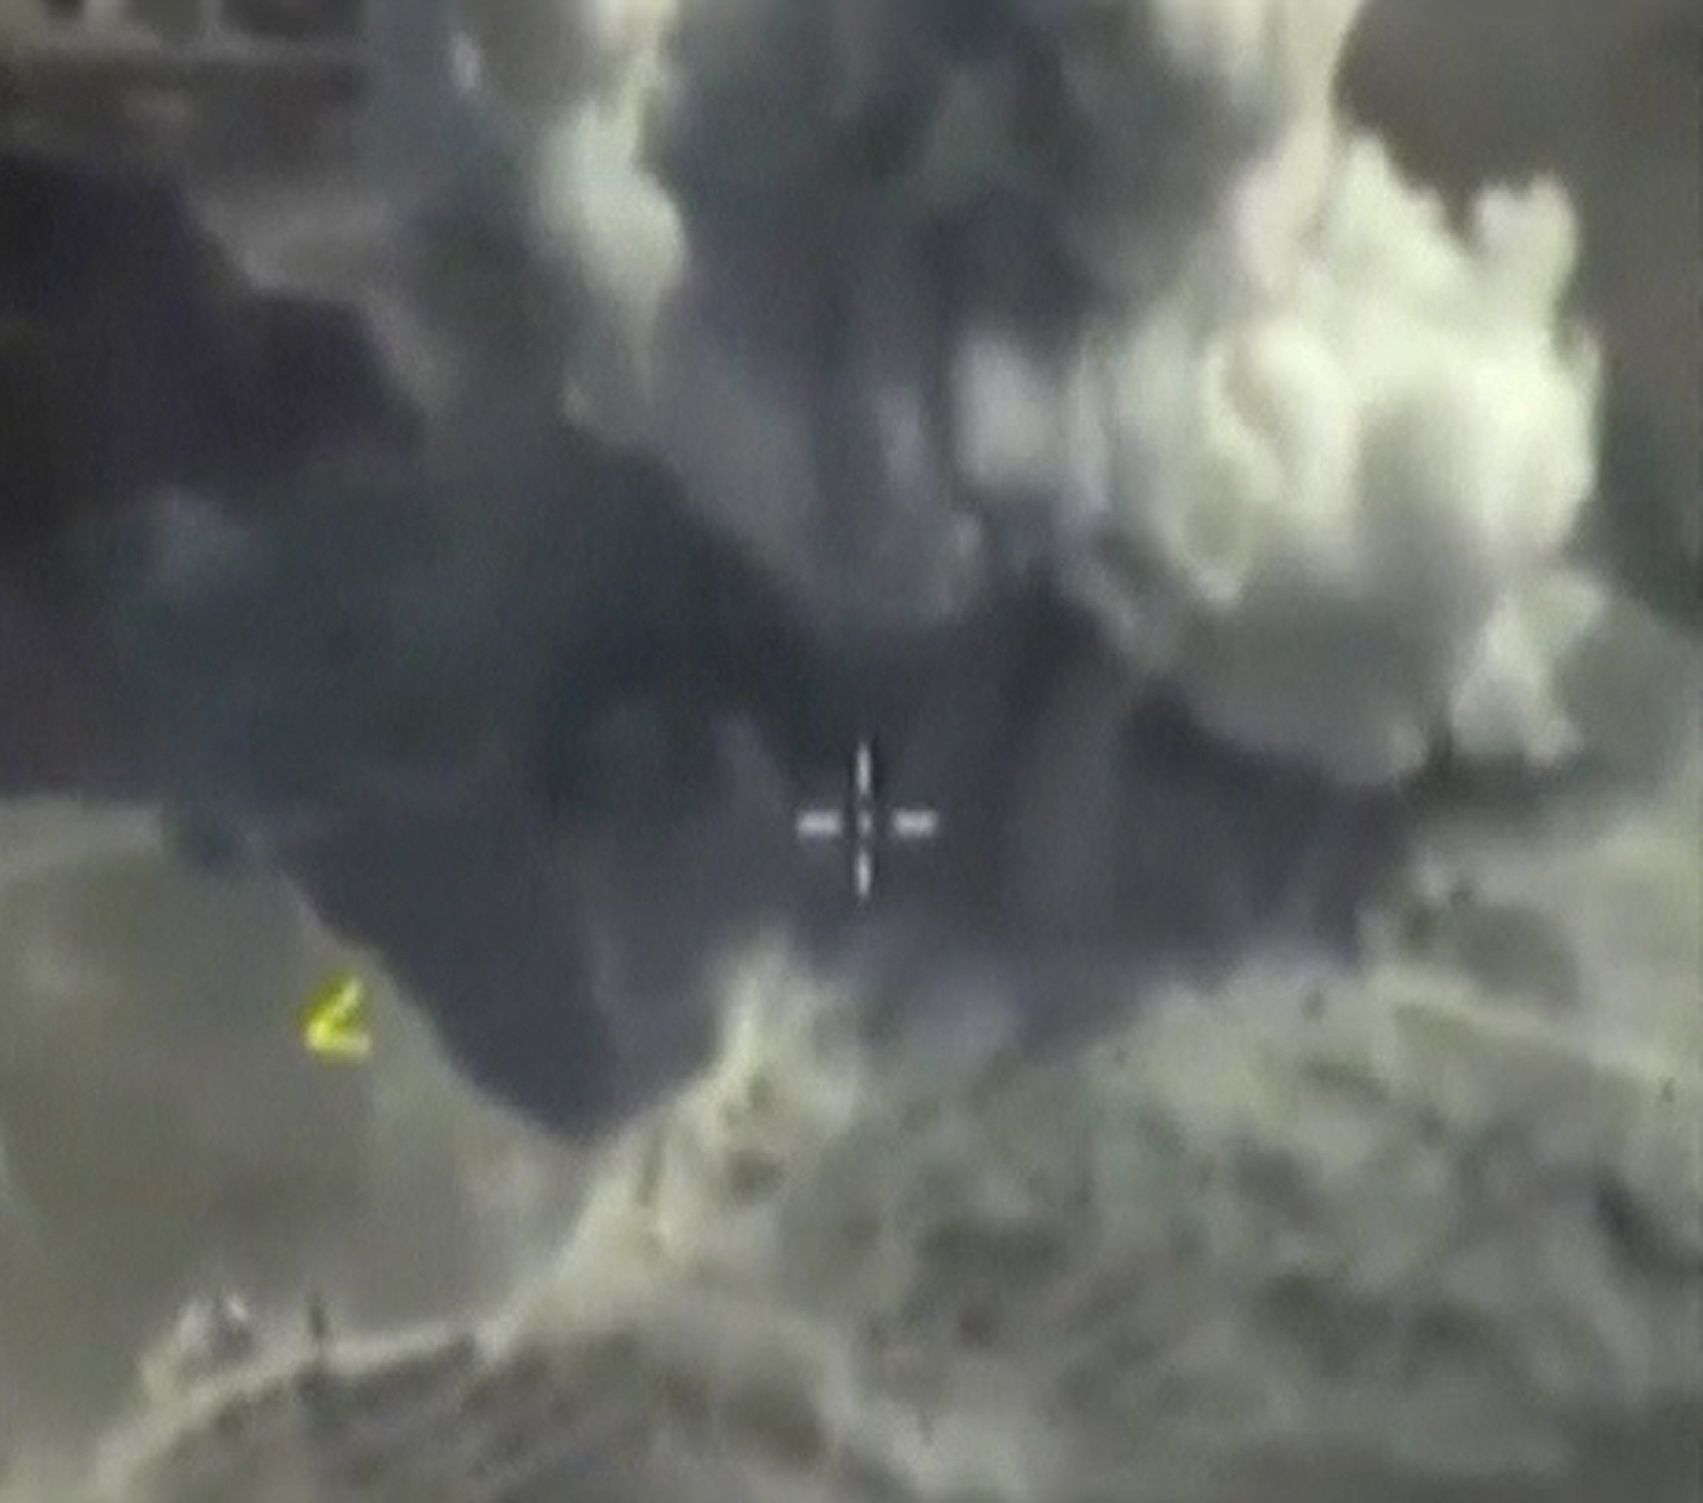 Ruské letecké útoky v Sýrii